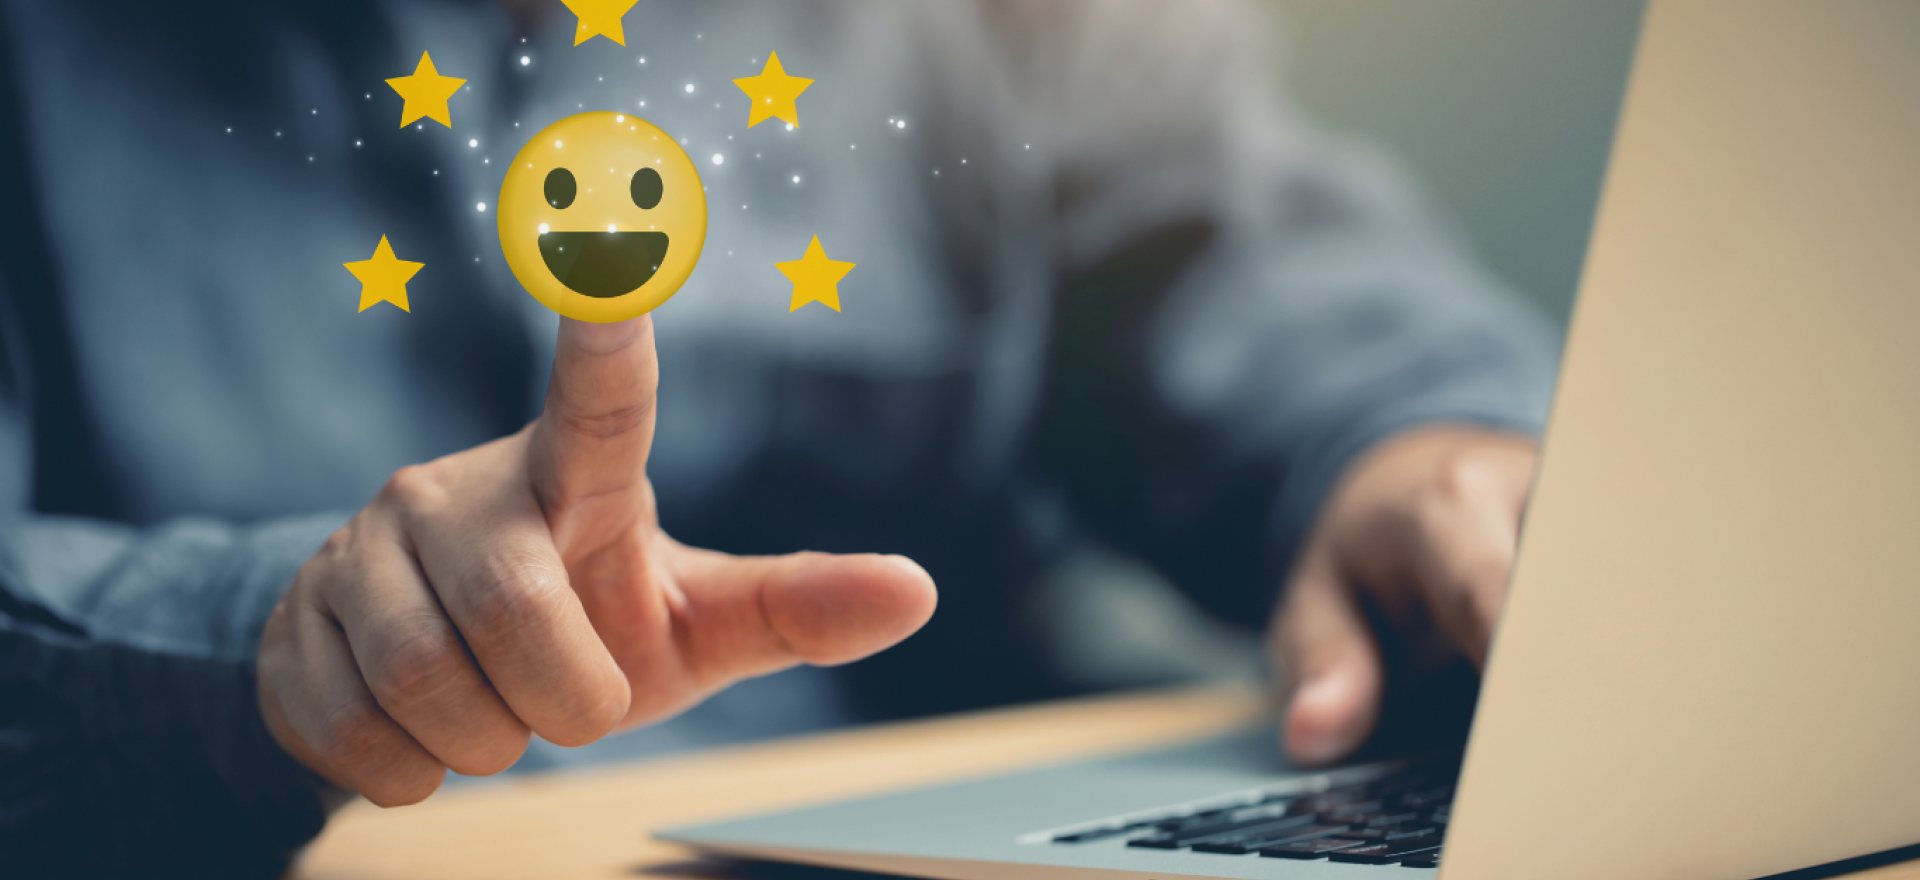 Ein glücklicher Emoji für zufriedene Kunden